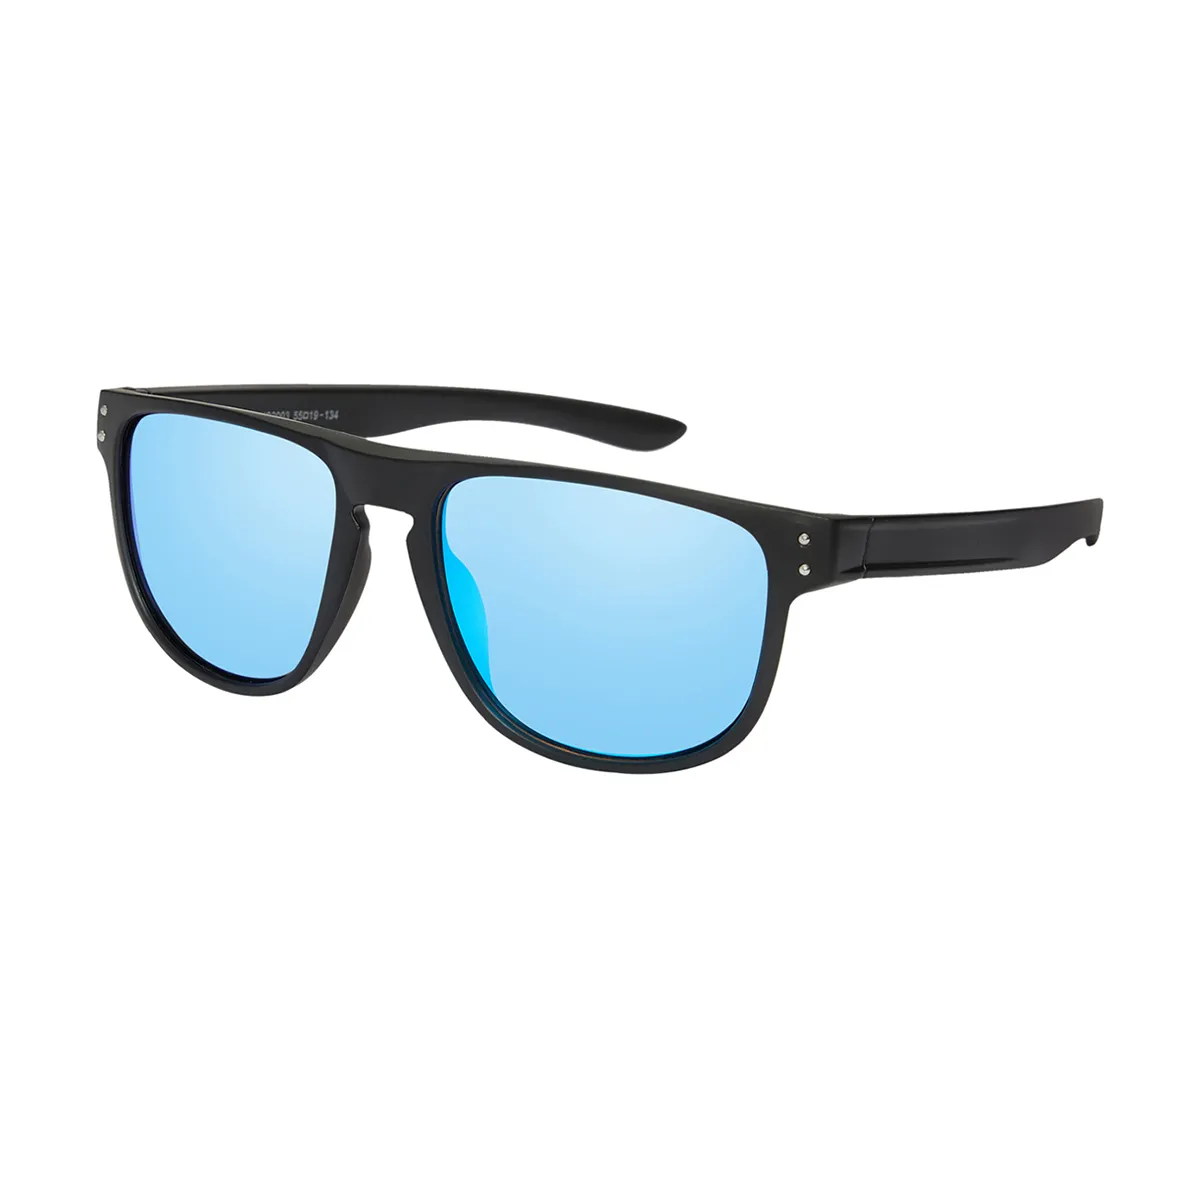 Elio - Square Black/1 Sunglasses for Men & Women